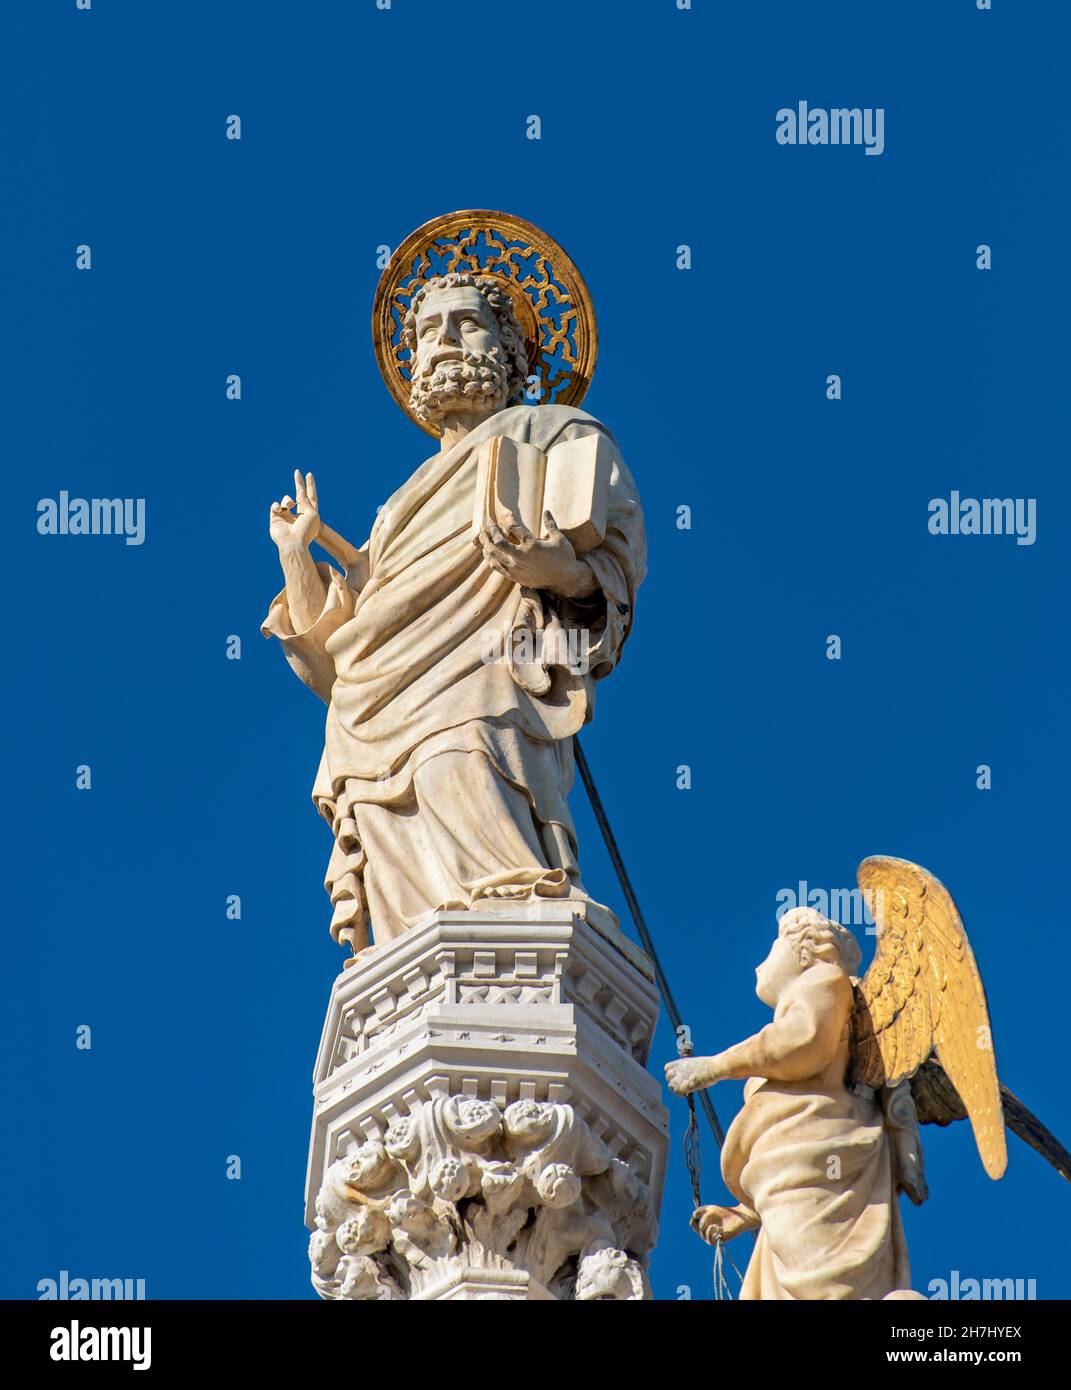 Statue de Saint-Marc l'évangéliste, basilique Saint-Marc, Piazza San Marco, Venise, Italie Banque D'Images